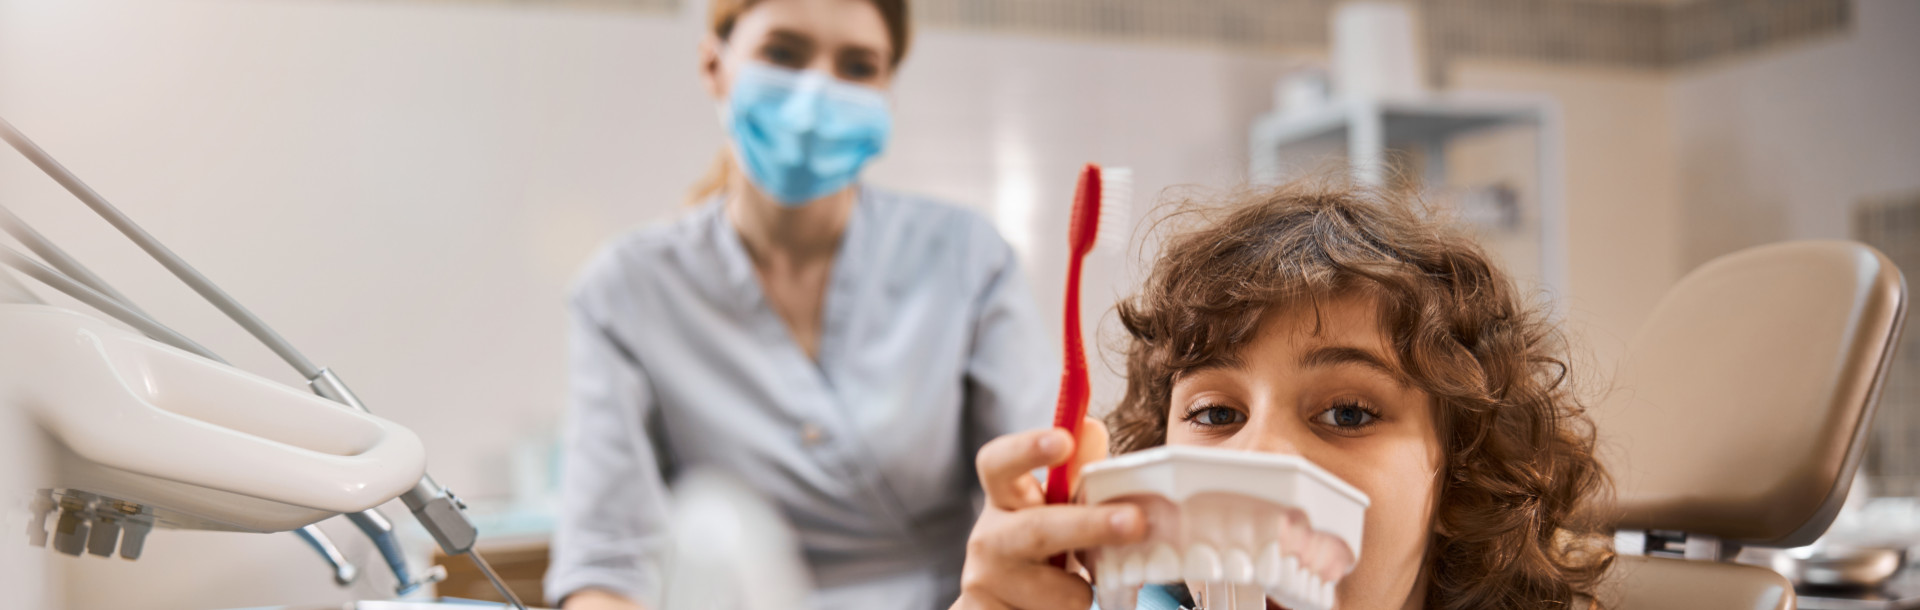 Antibióticos en la infancia y salud dental - Siegfried Rhein Sigfrid